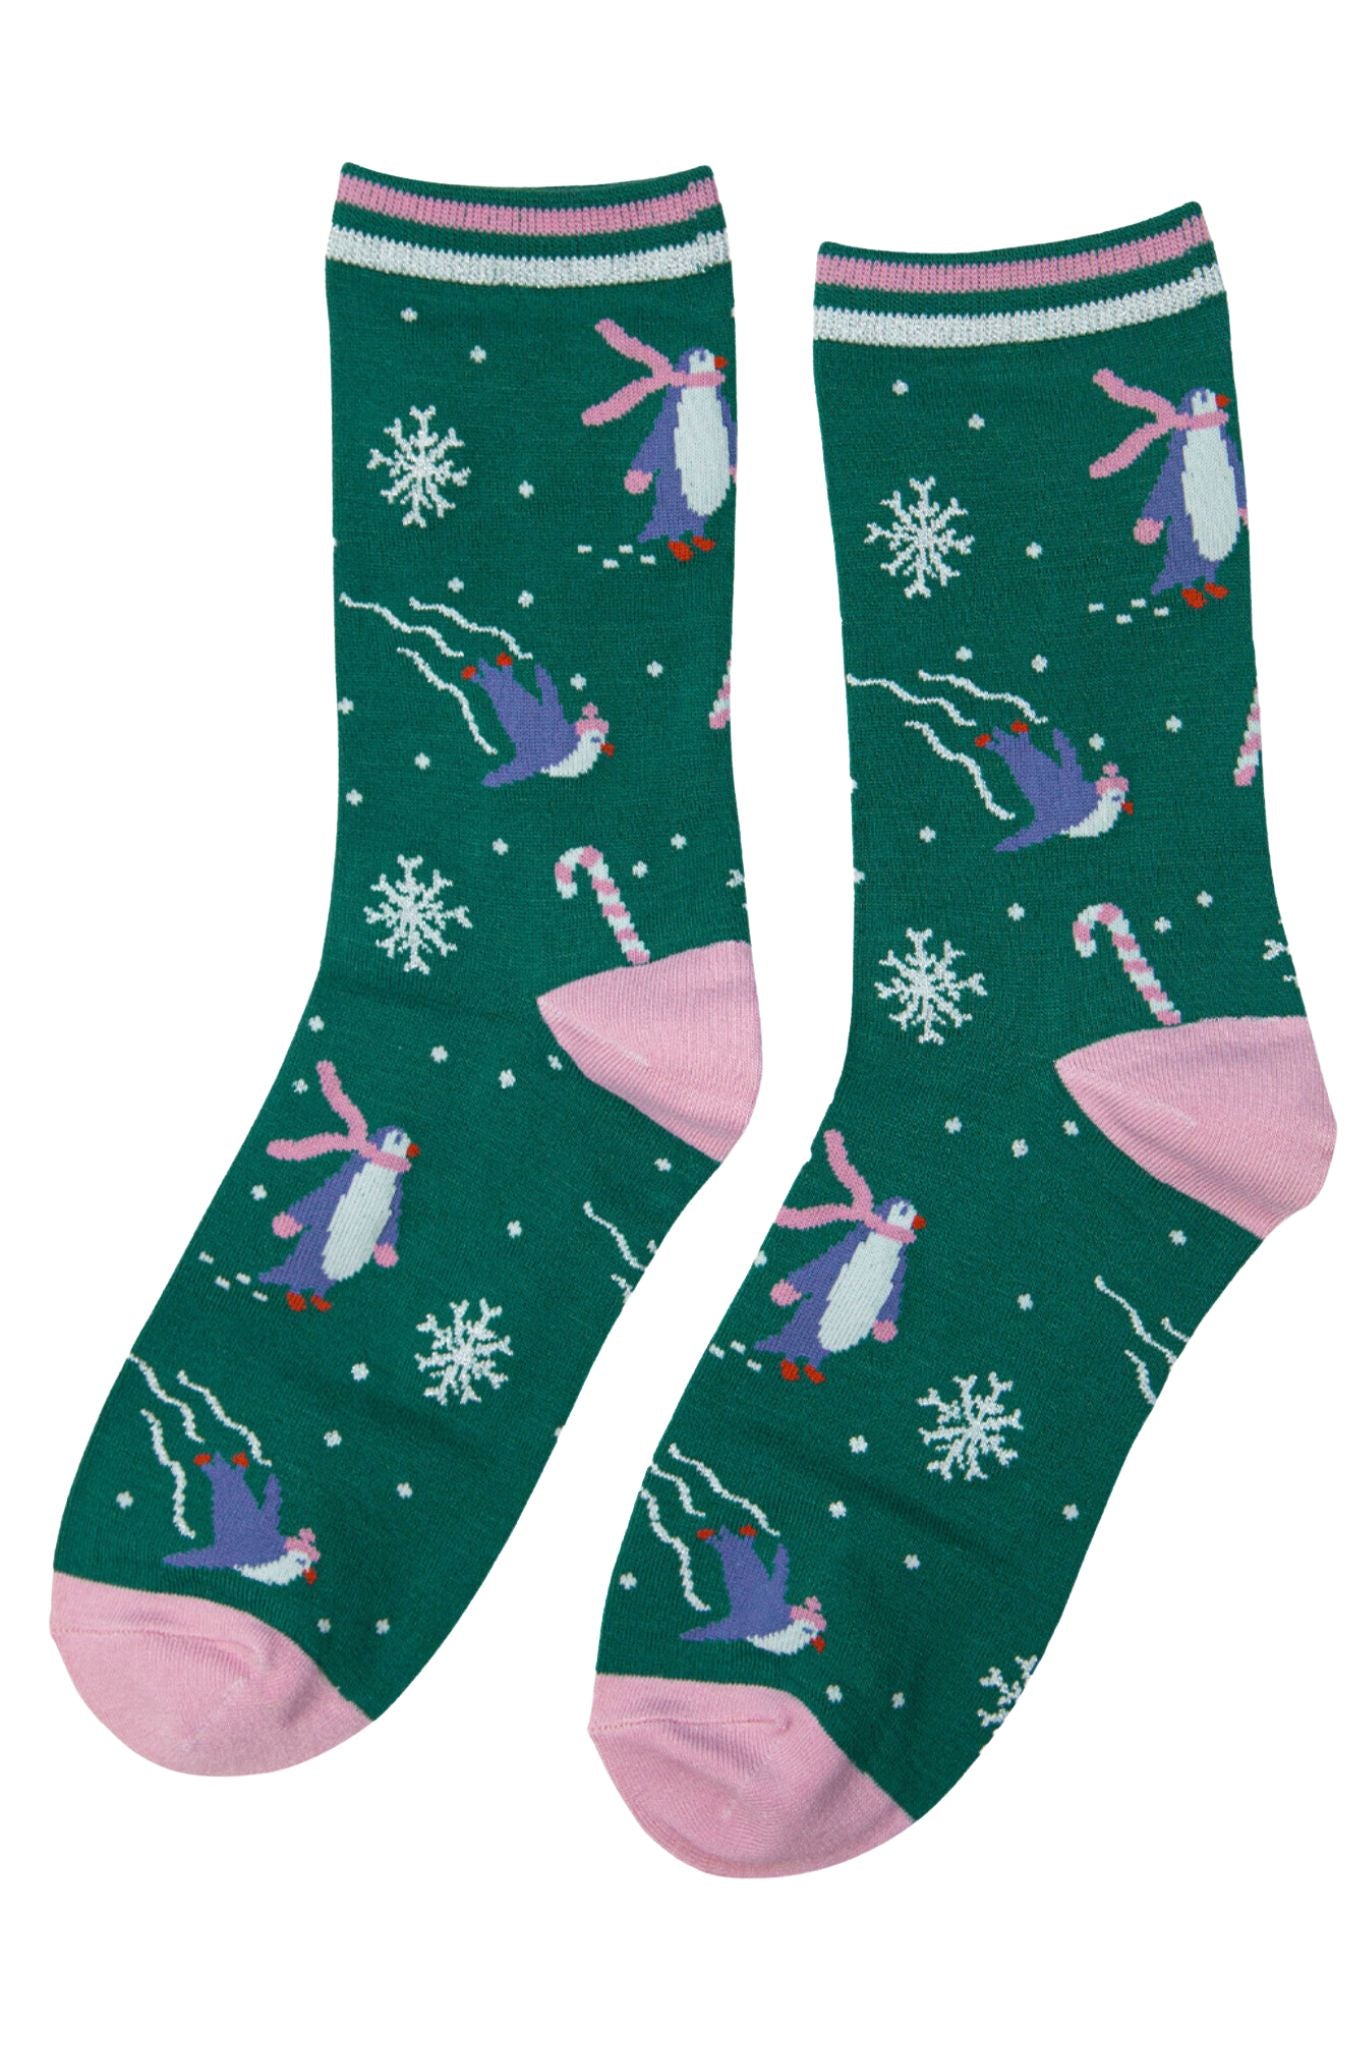 green glitter xmas socks featuring skating penguins